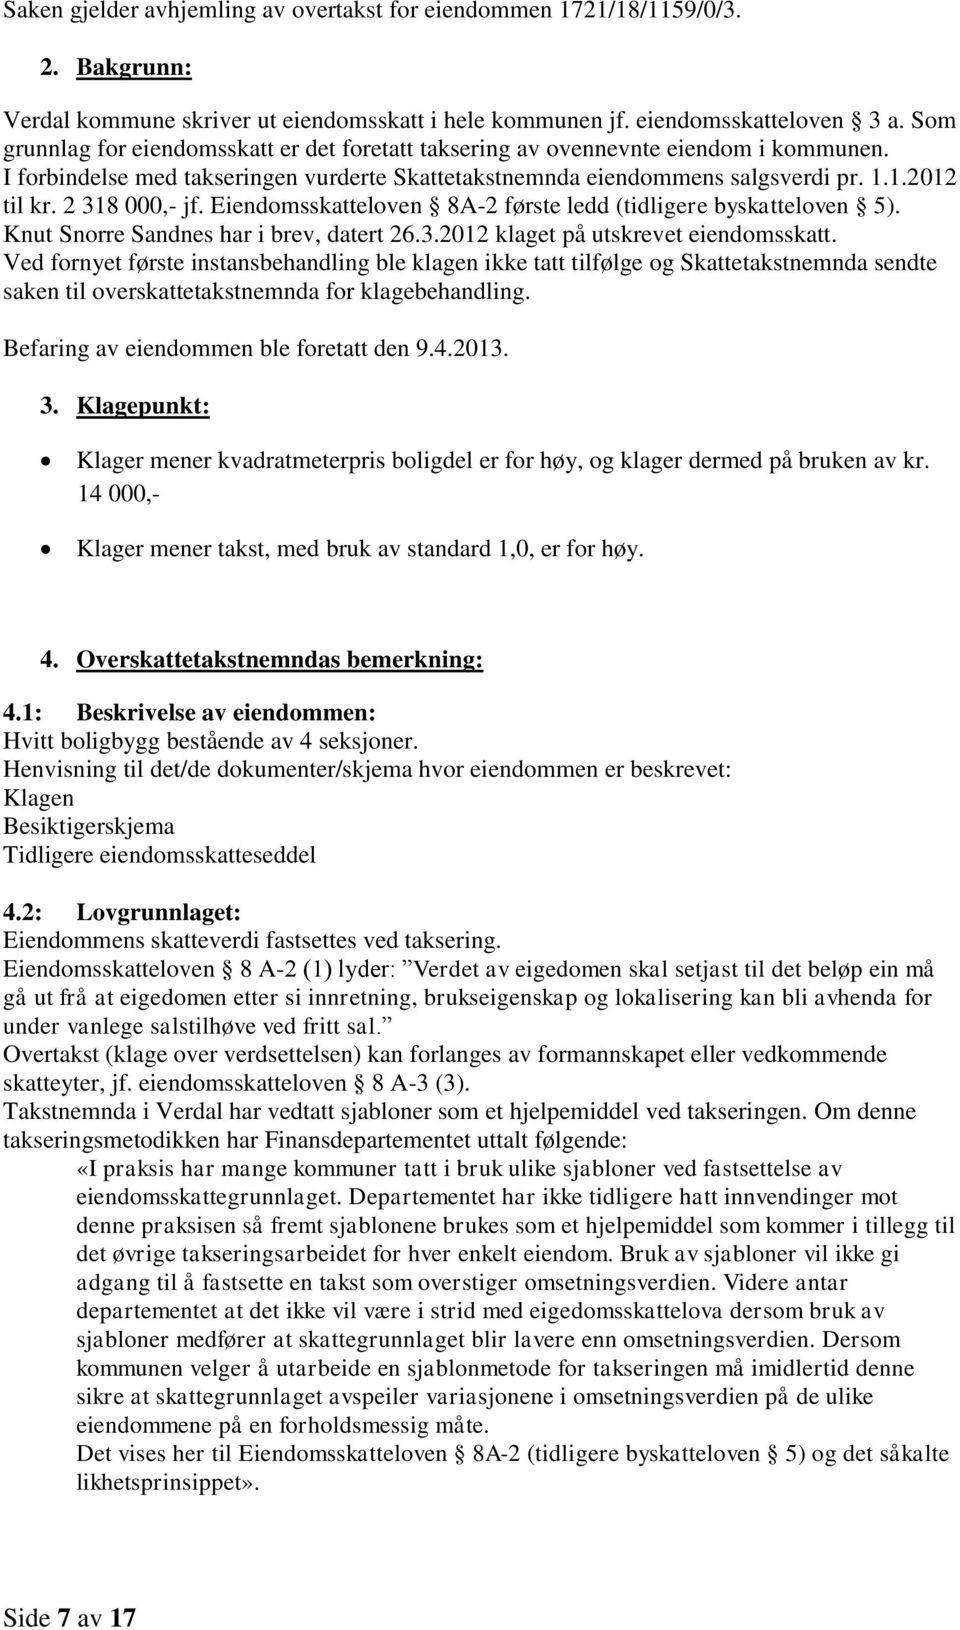 2 318 000,- jf. Eiendomsskatteloven 8A-2 første ledd (tidligere byskatteloven 5). Knut Snorre Sandnes har i brev, datert 26.3.2012 klaget på utskrevet eiendomsskatt.